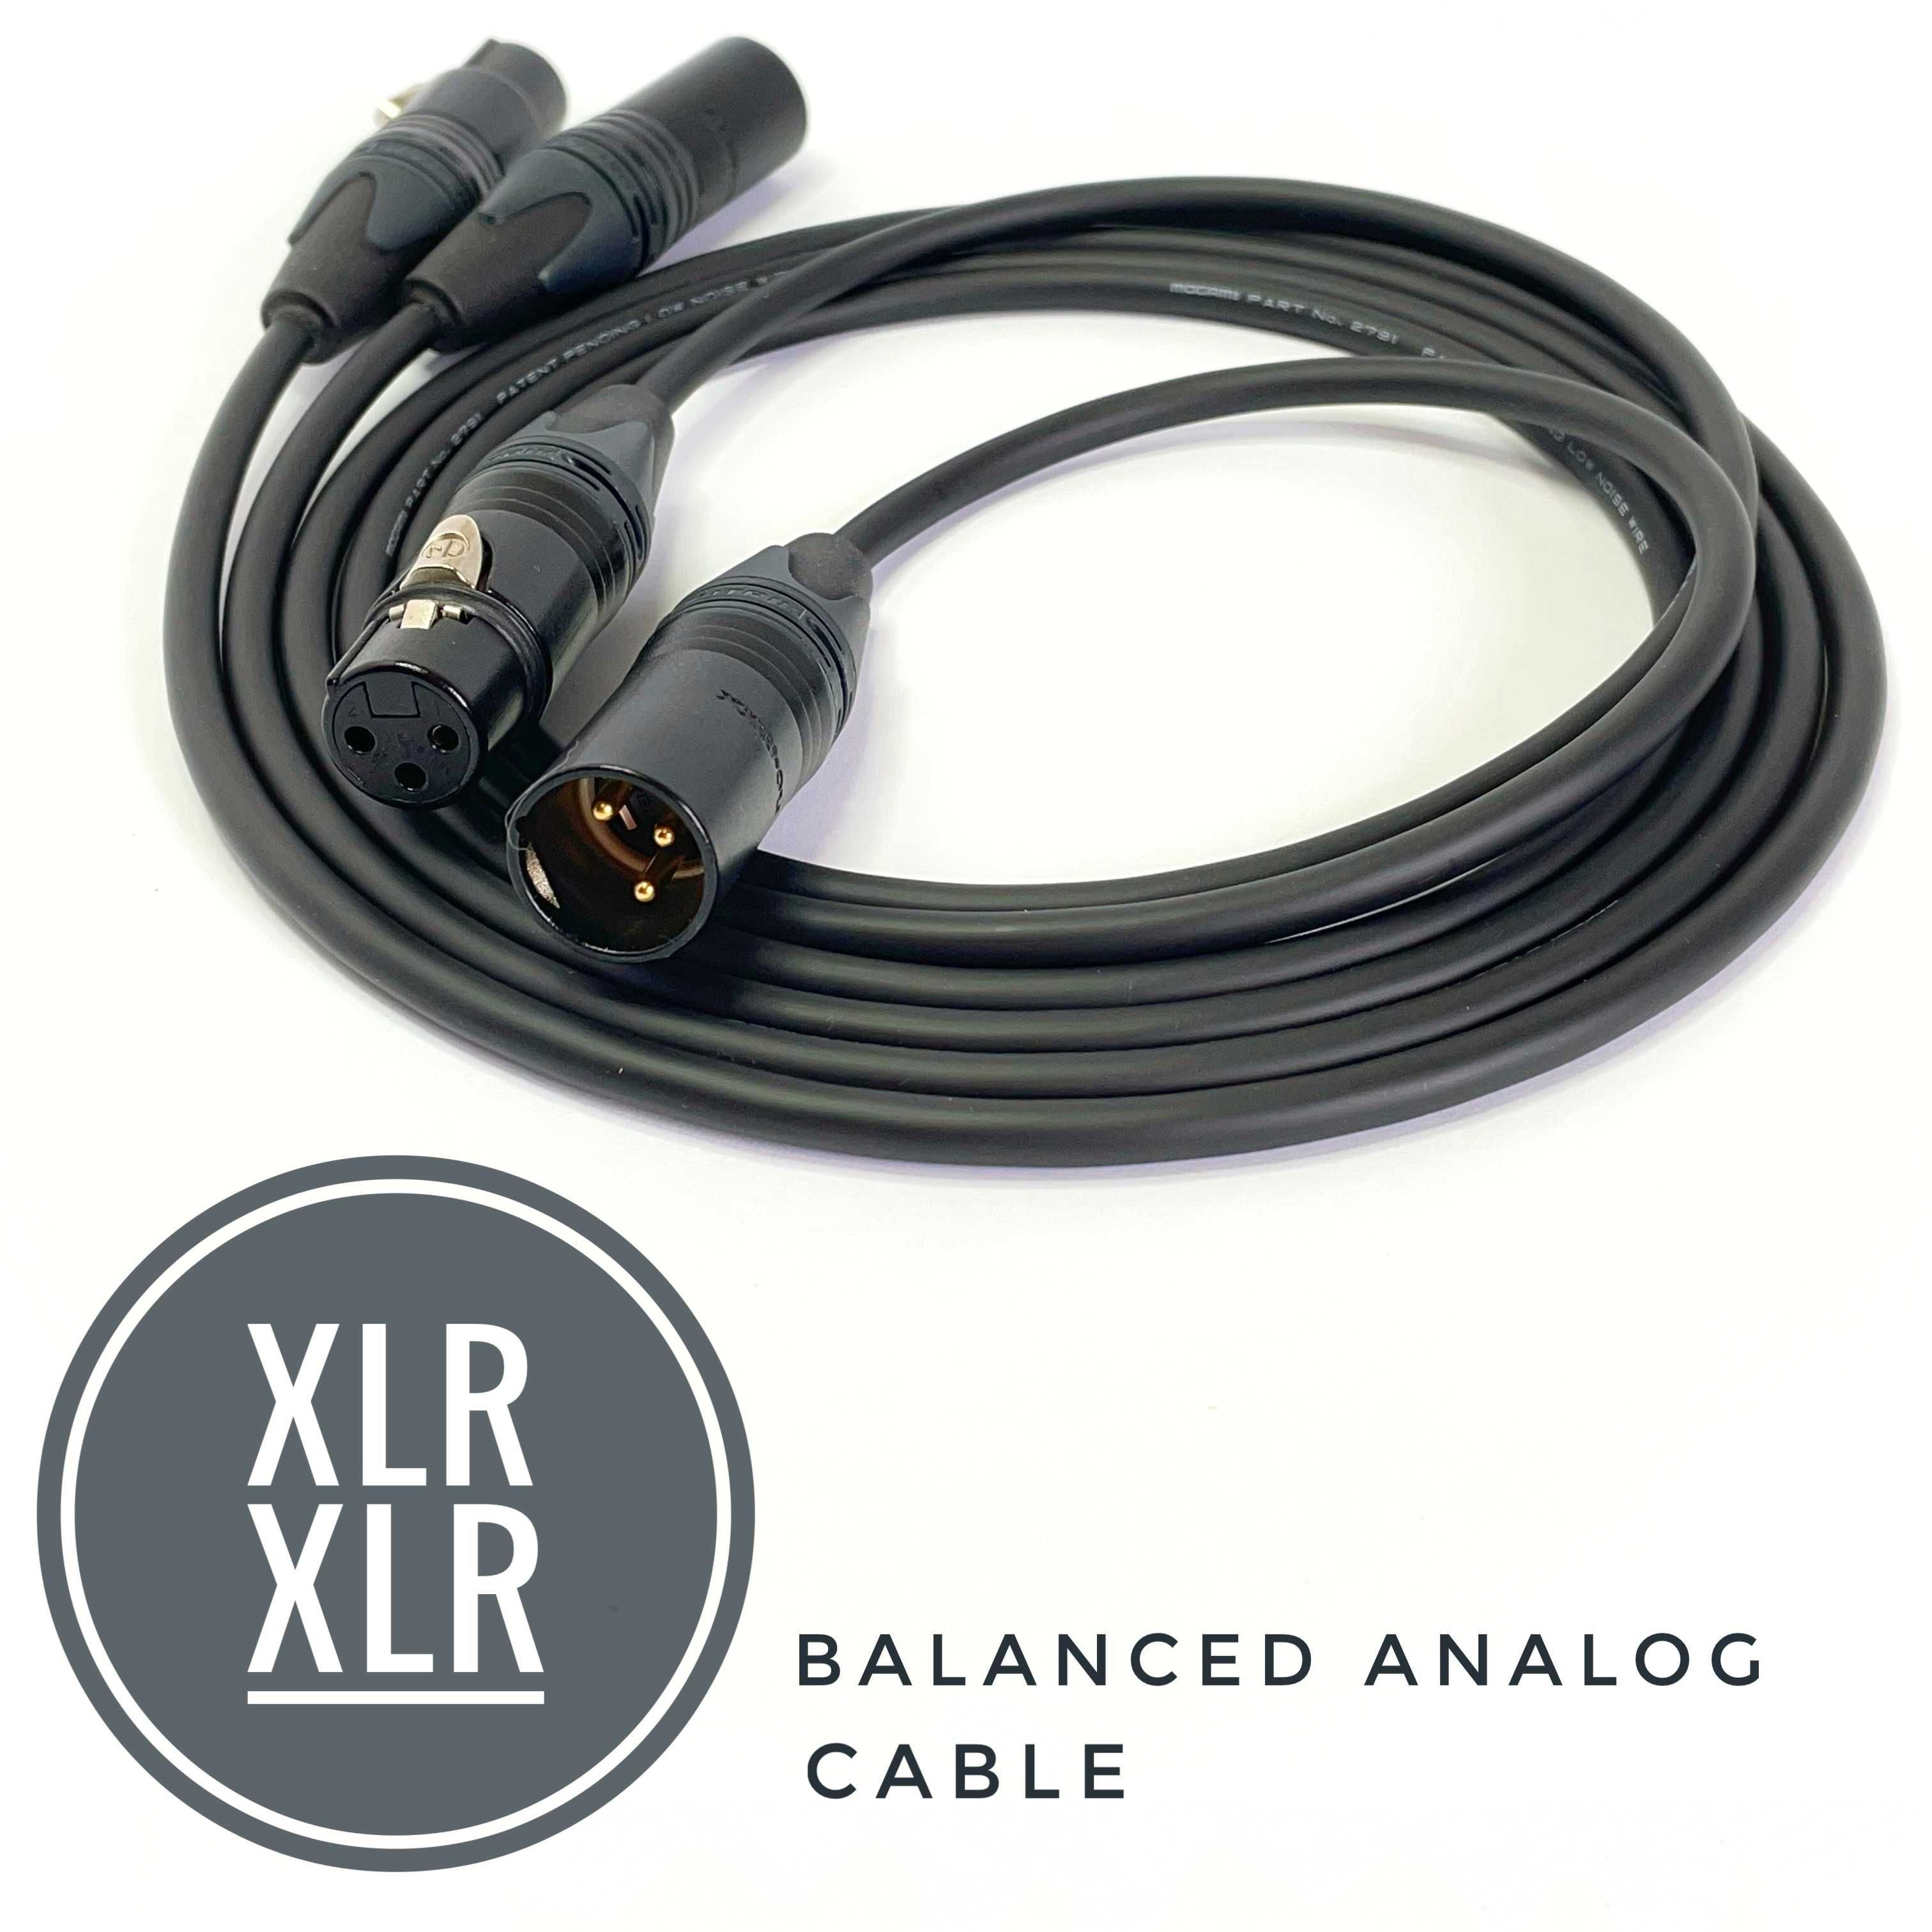 Лучшие межблочные кабеля  RCA, XLR, Jack для HiFi, HighEnd и студии